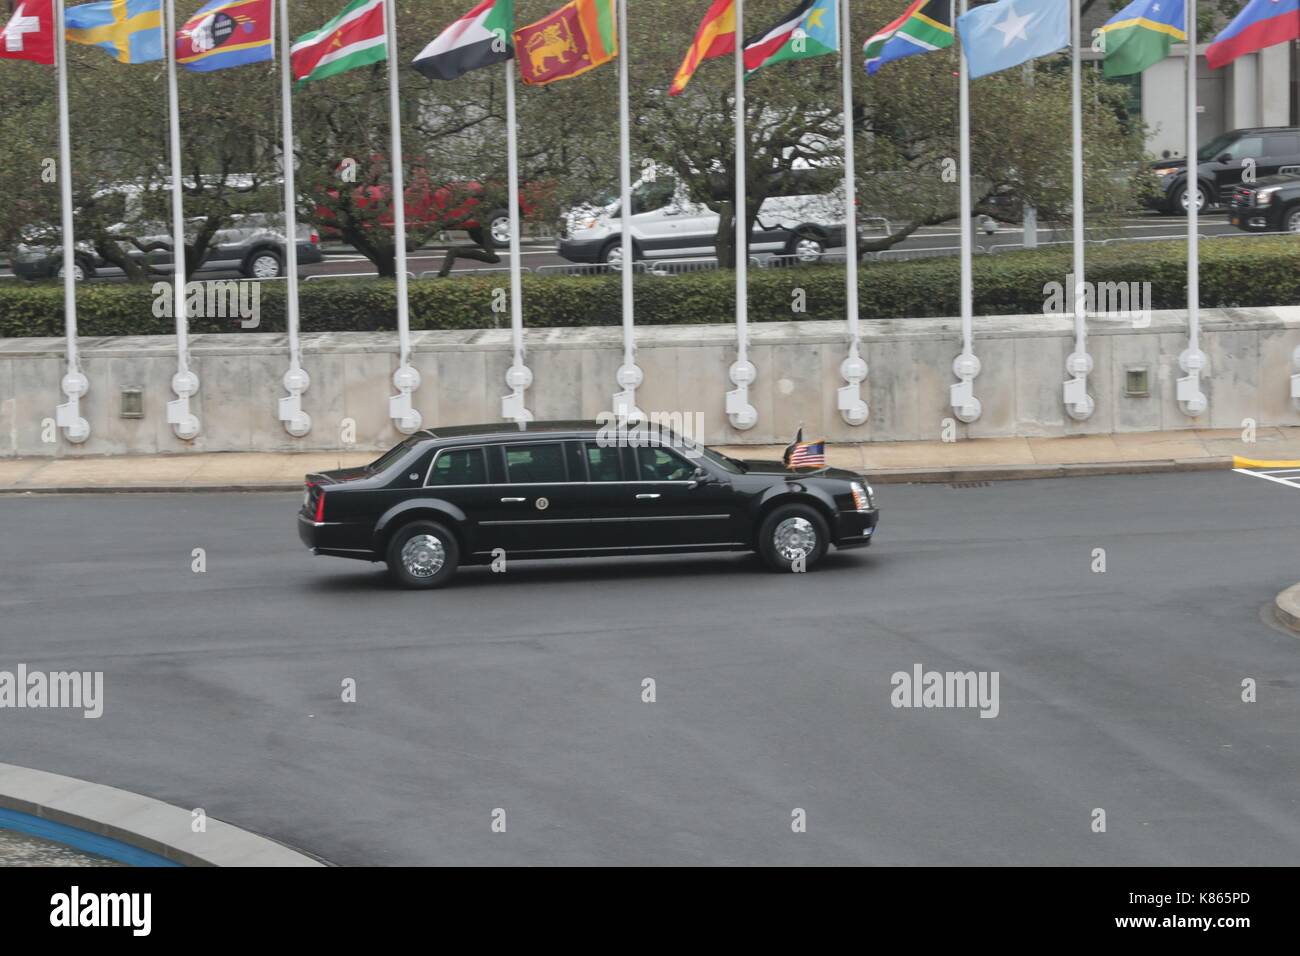 Organisation des Nations Unies, New York, USA, 18 septembre 2017 - Le président américain, Donald Trump qui arrivent aujourd'hui au siège des Nations unies à New York pour une réunion sur "la réforme des Nations unies". photo : Luiz rampelotto/europanewswire dans le monde d'utilisation | Banque D'Images